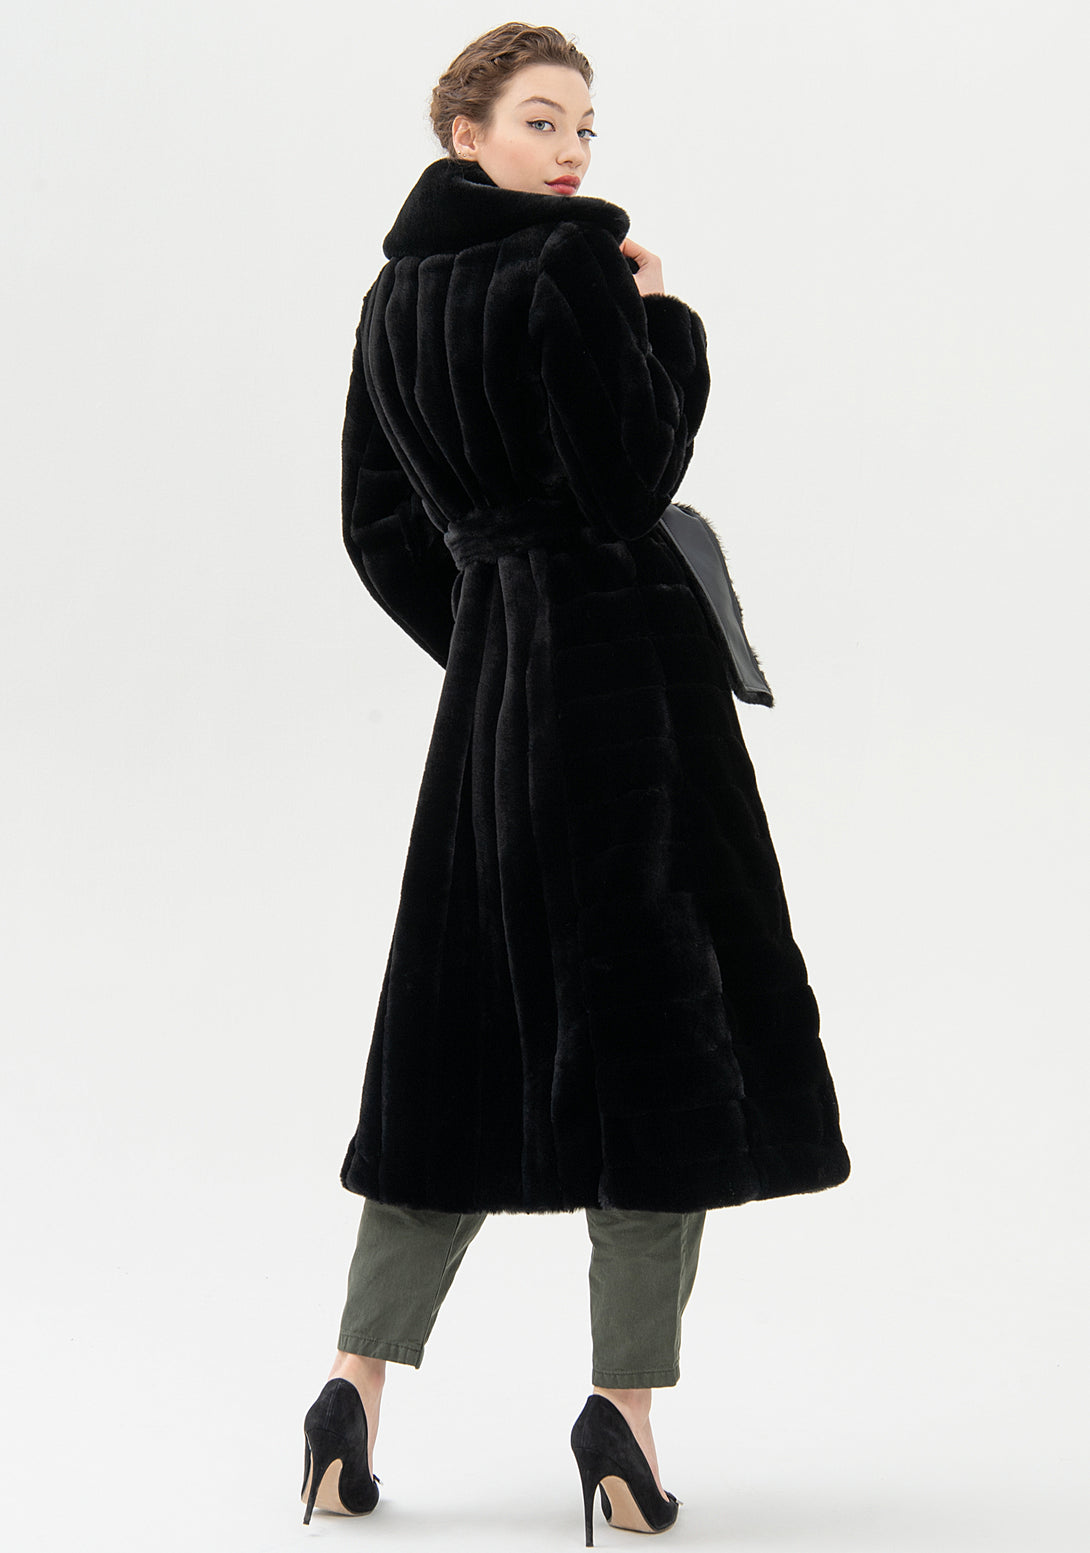 Coat regular fit, long, made in eco fur